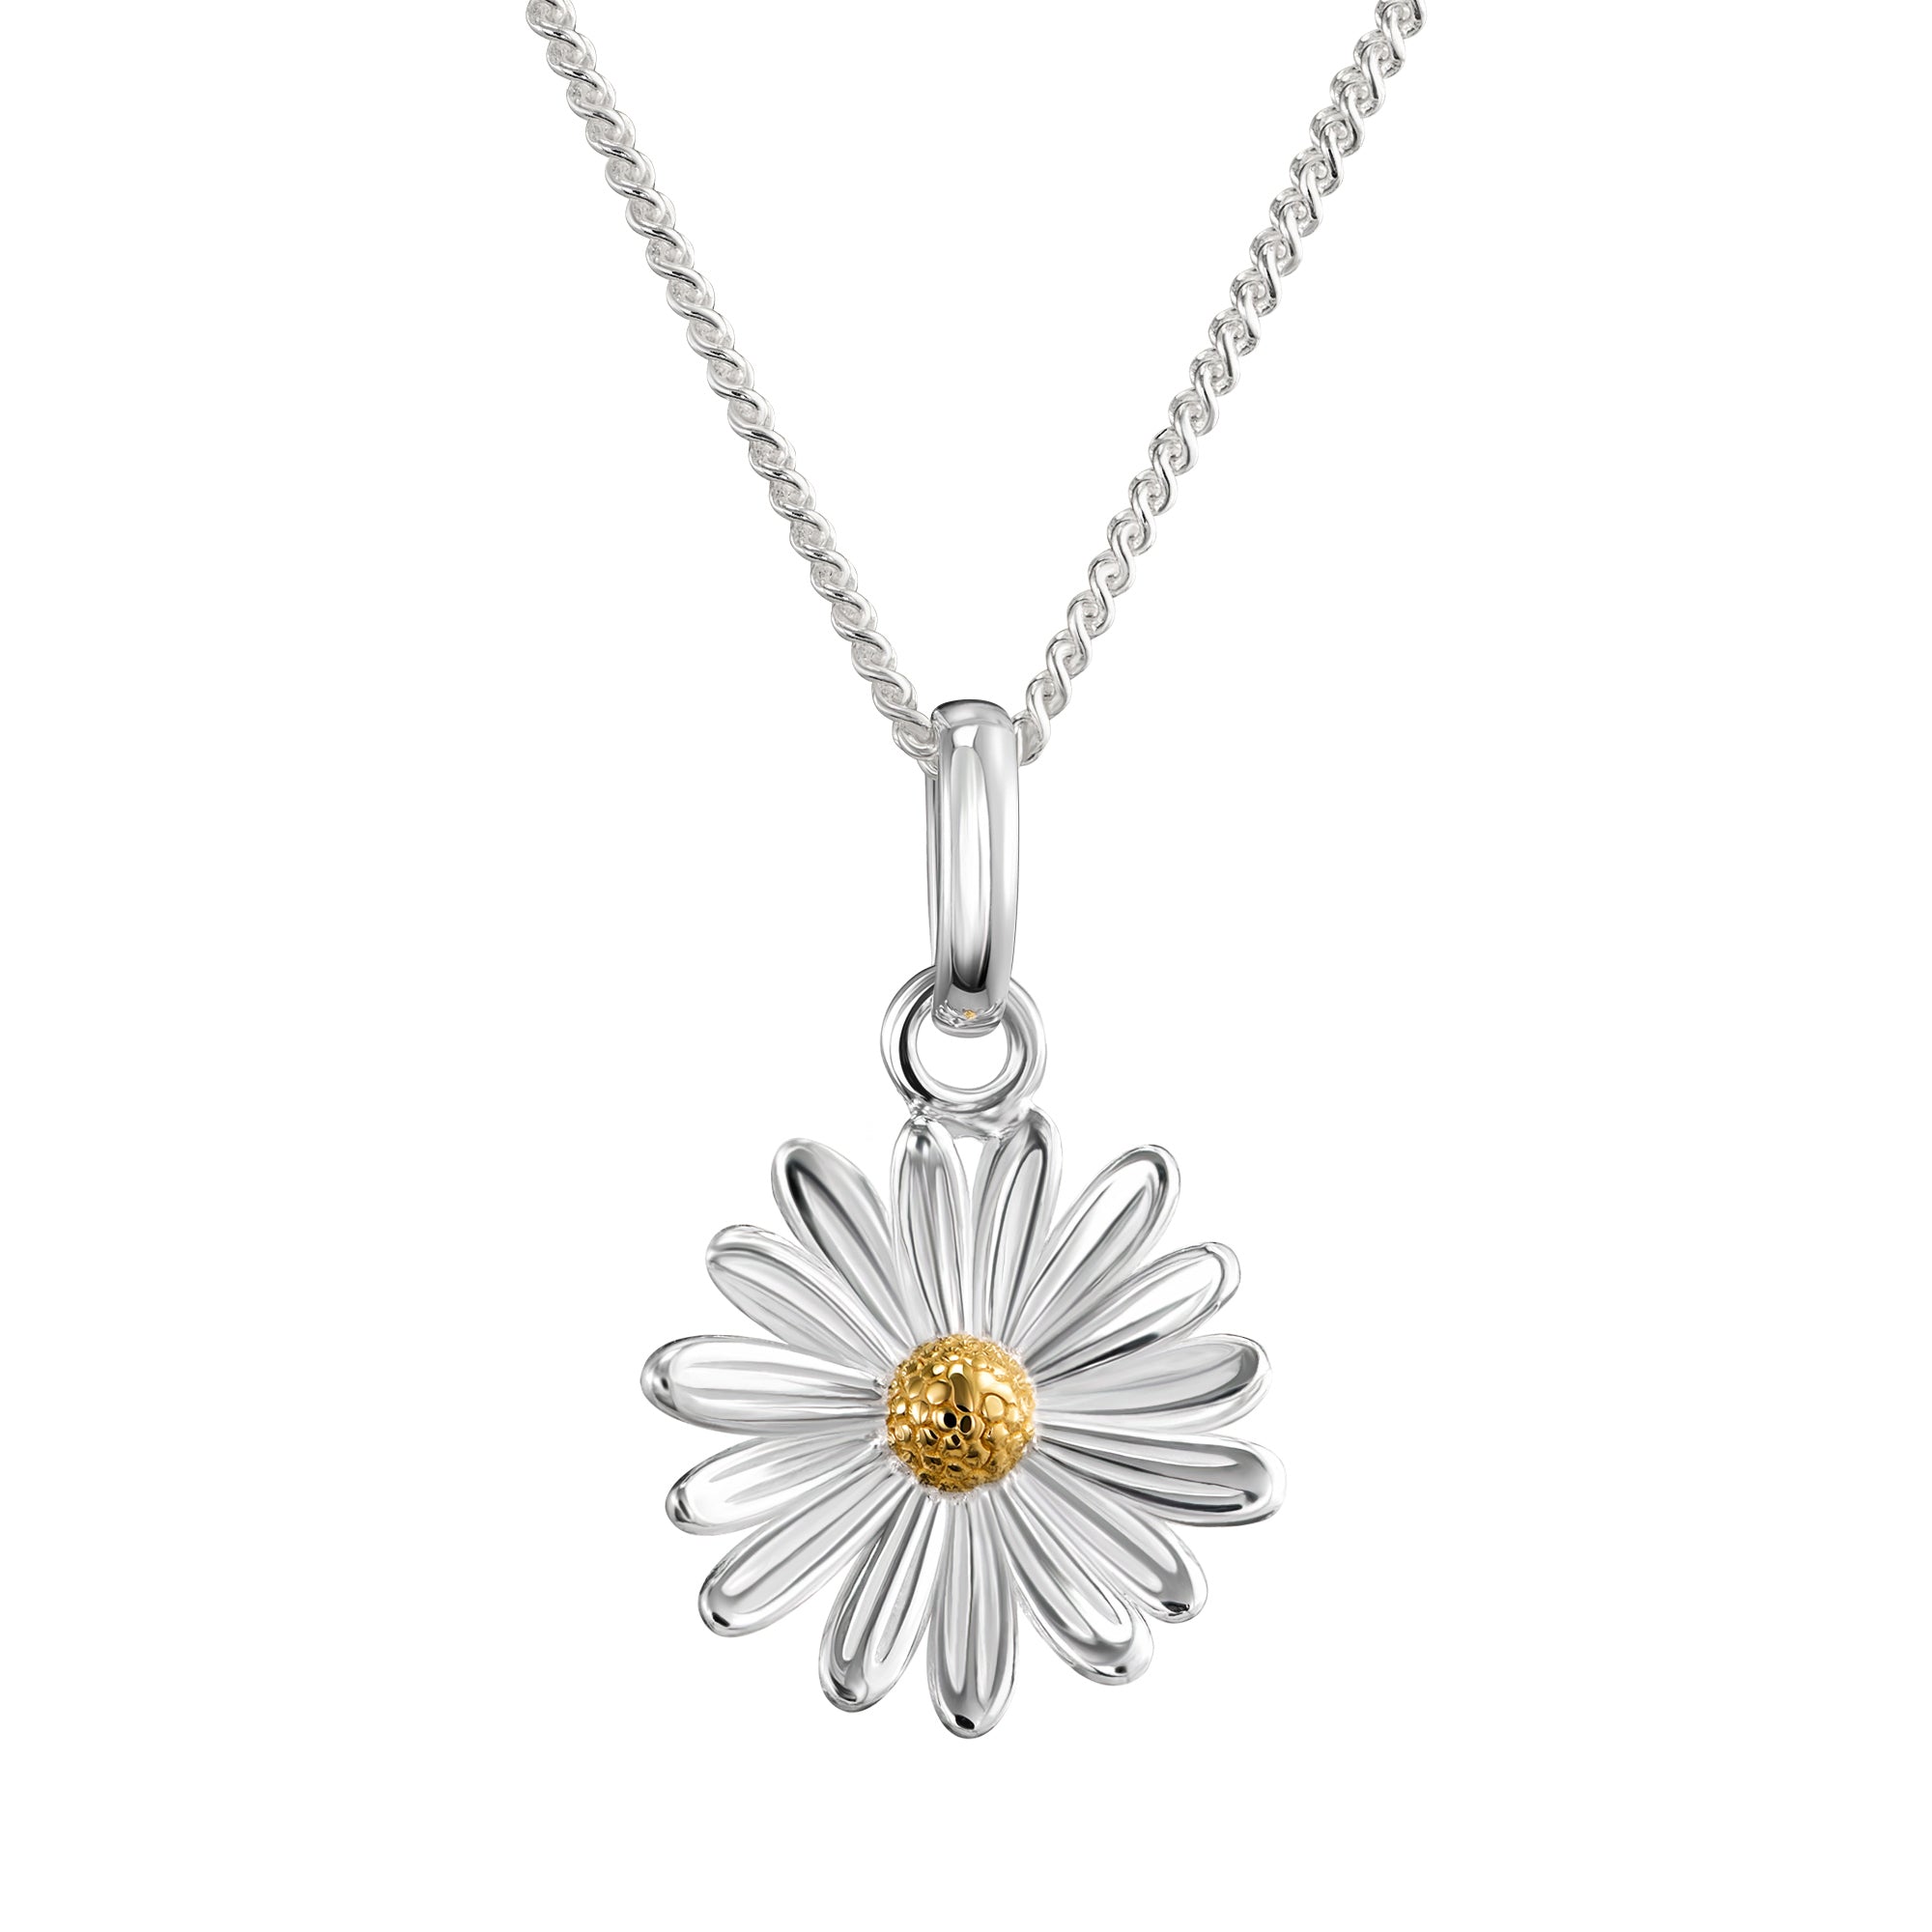 [13.69€]Gänseblümchen Anhänger Blumen Halskette